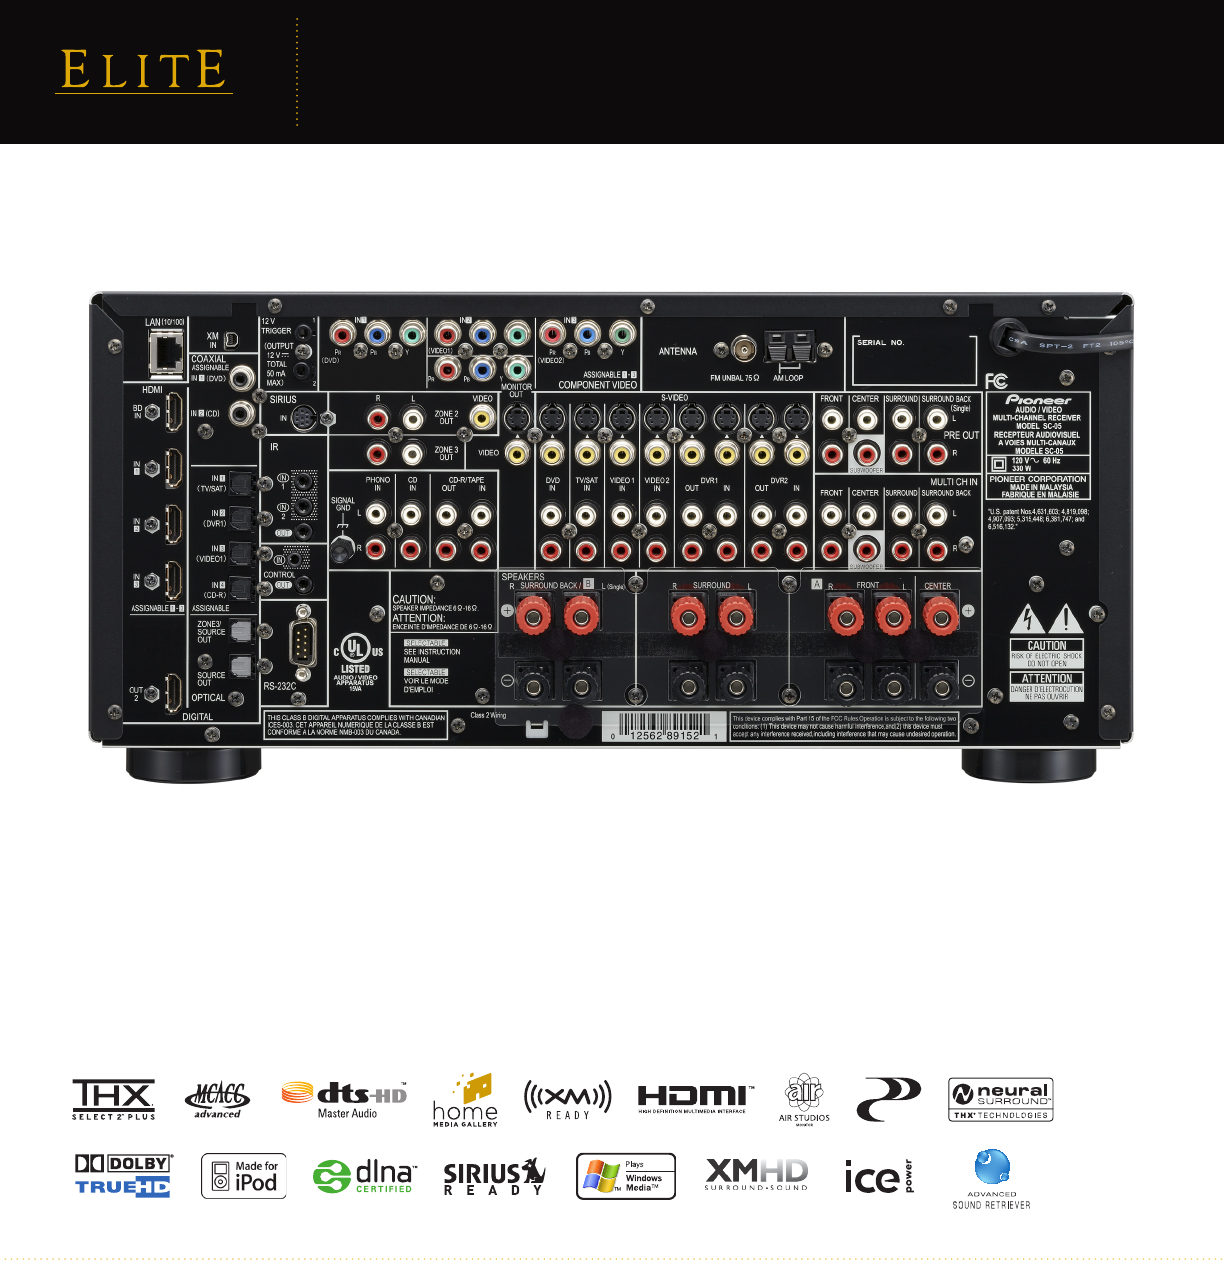 Elite Sc 05 Users Manual